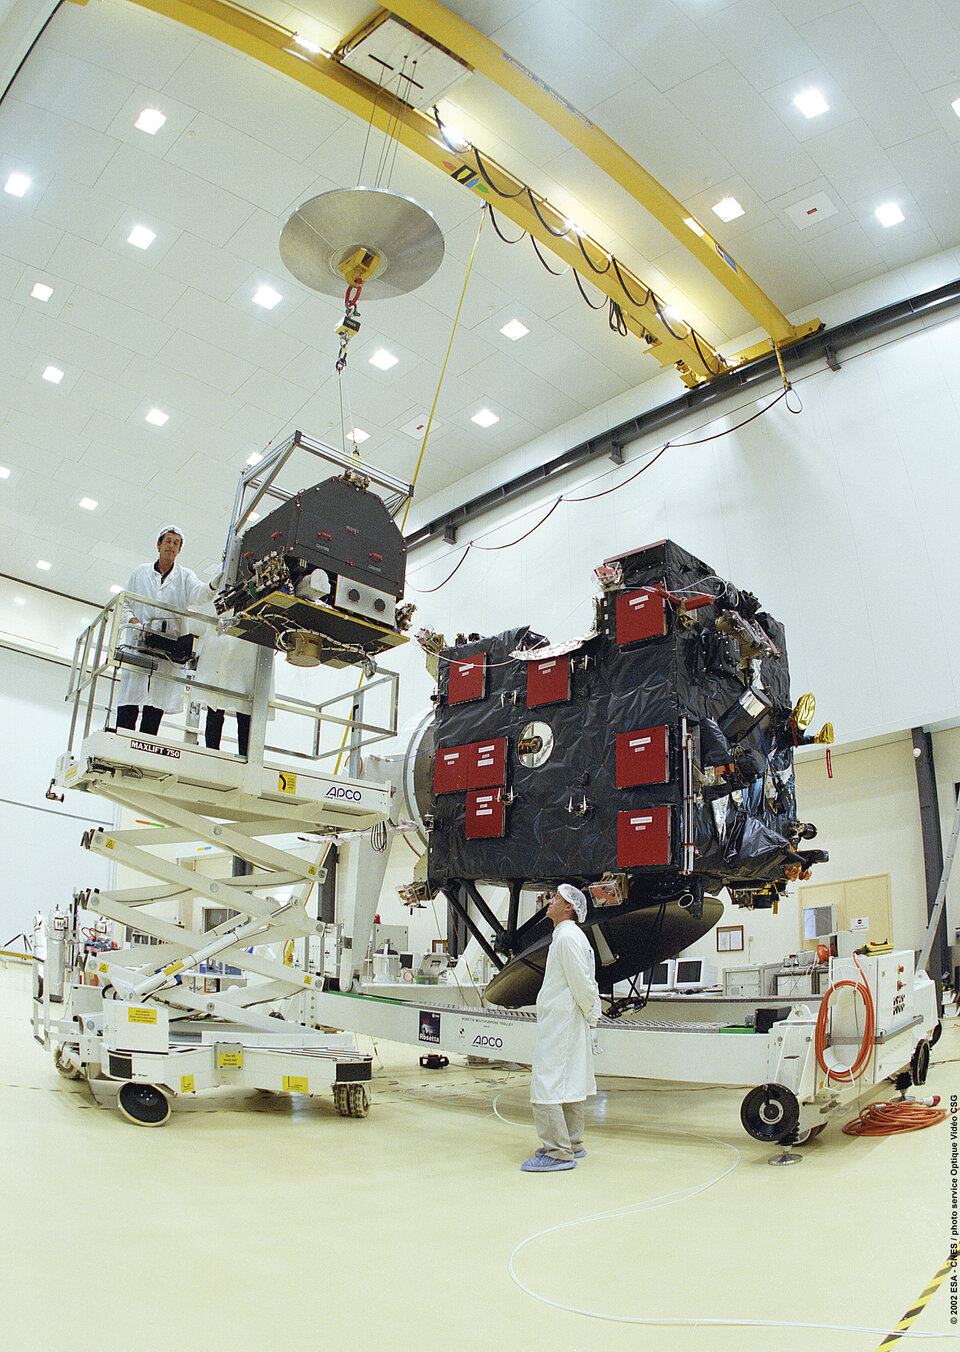 De Europese kometensonde Rosetta voor de lancering op Europa's ruimtehaven in Kourou, Frans Guyana